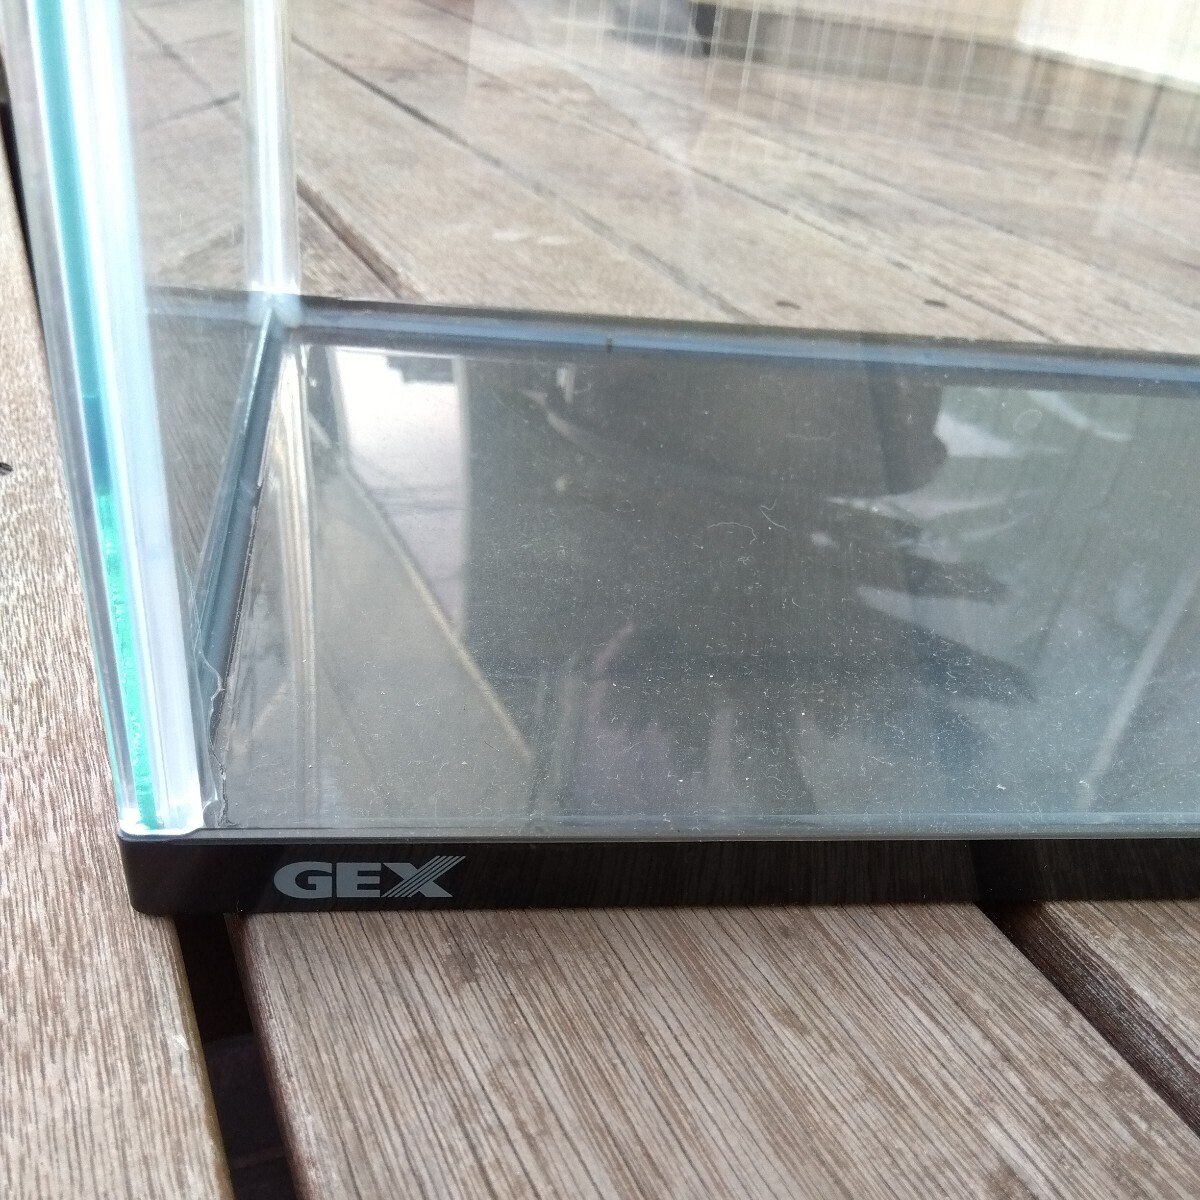  стекло аквариум LED с подсветкой p черновой ta имеется GEX 40 см превосходный товар 